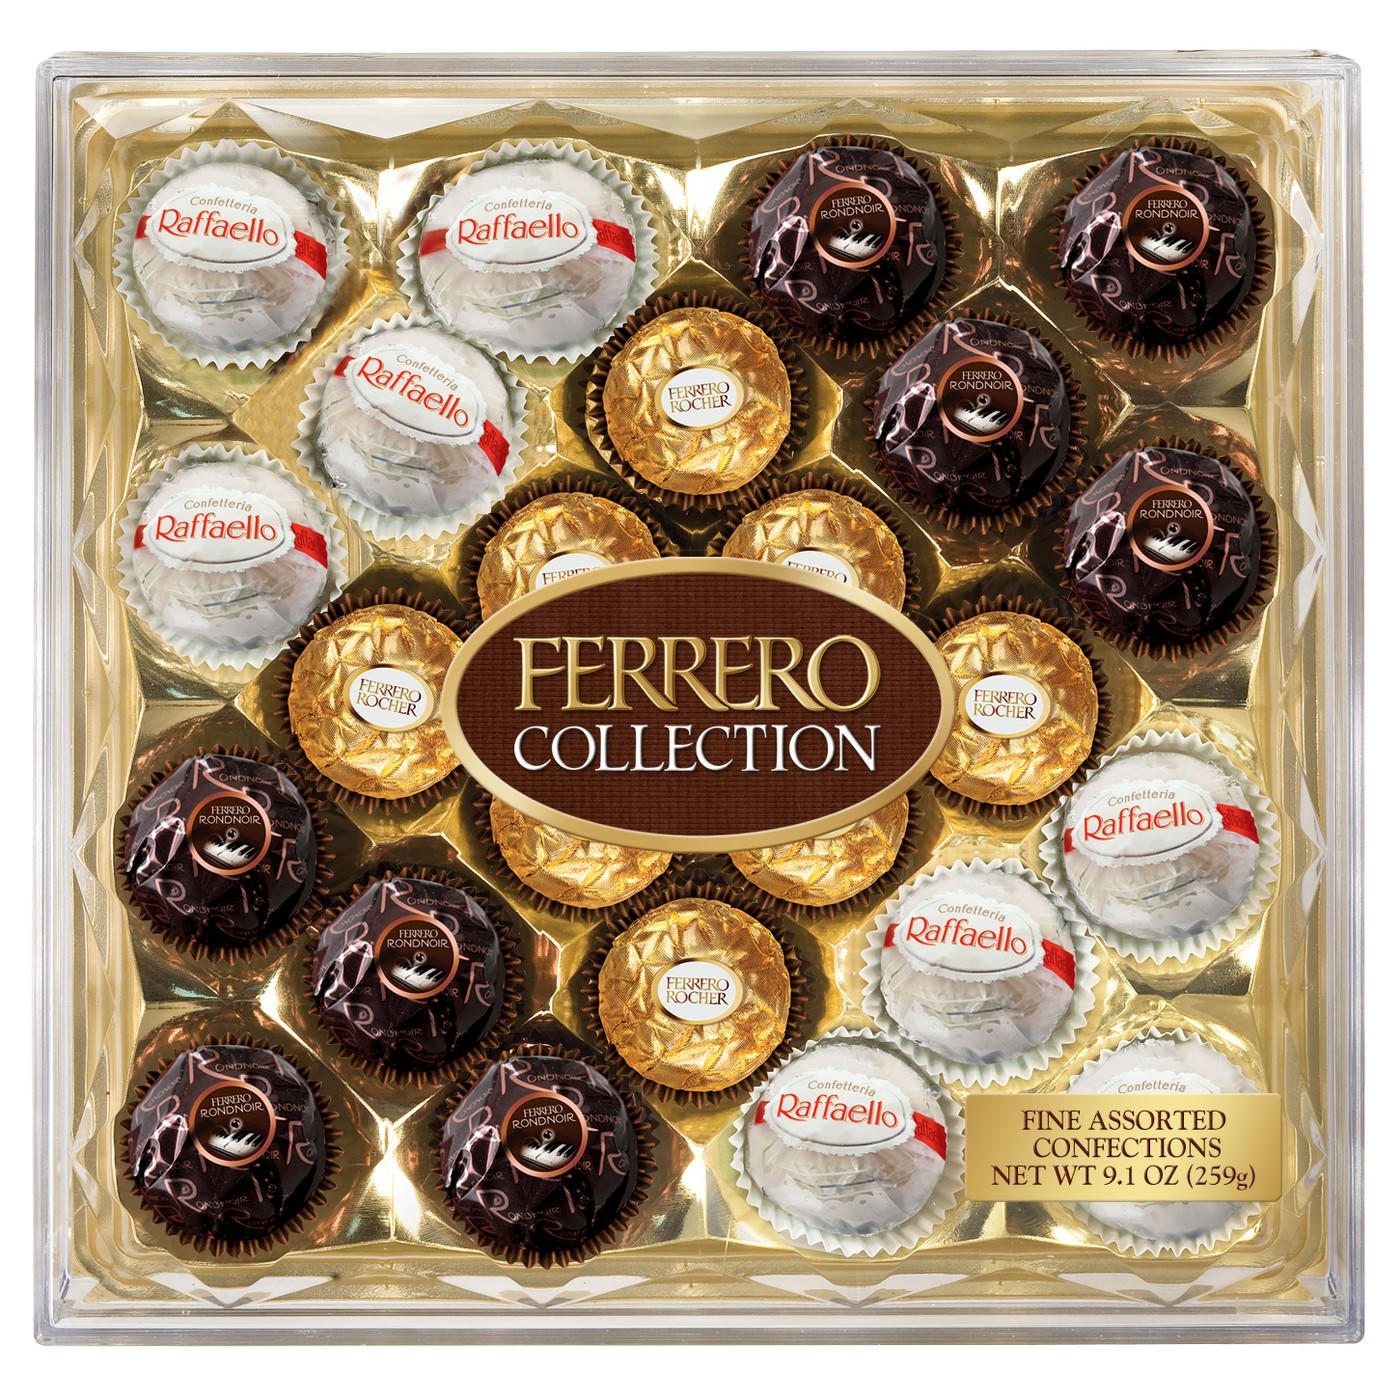 Ferrero Collection - 269g